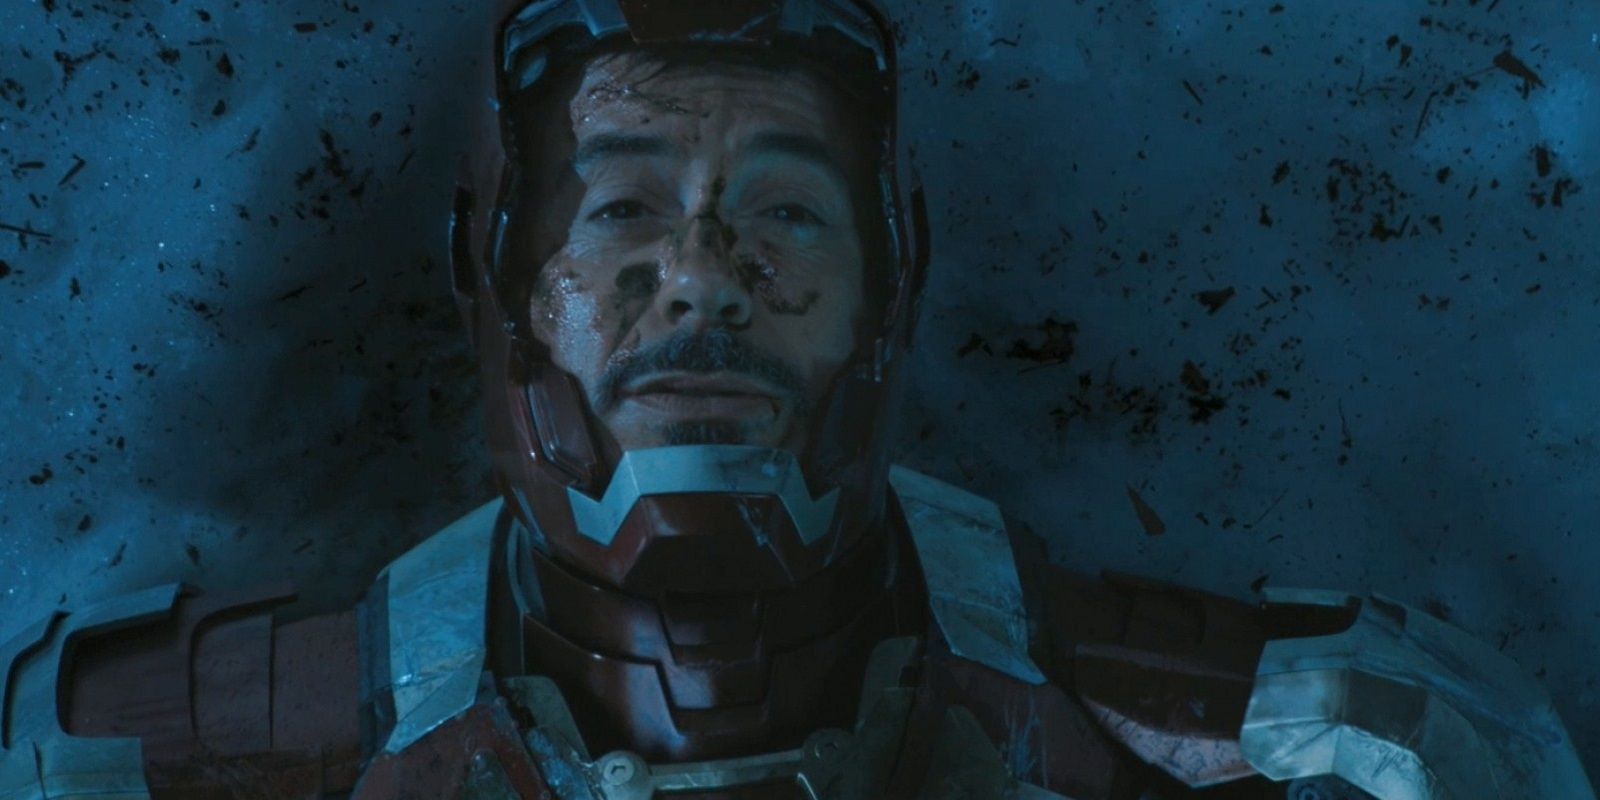 Tony Stark injured in Iron Man 3